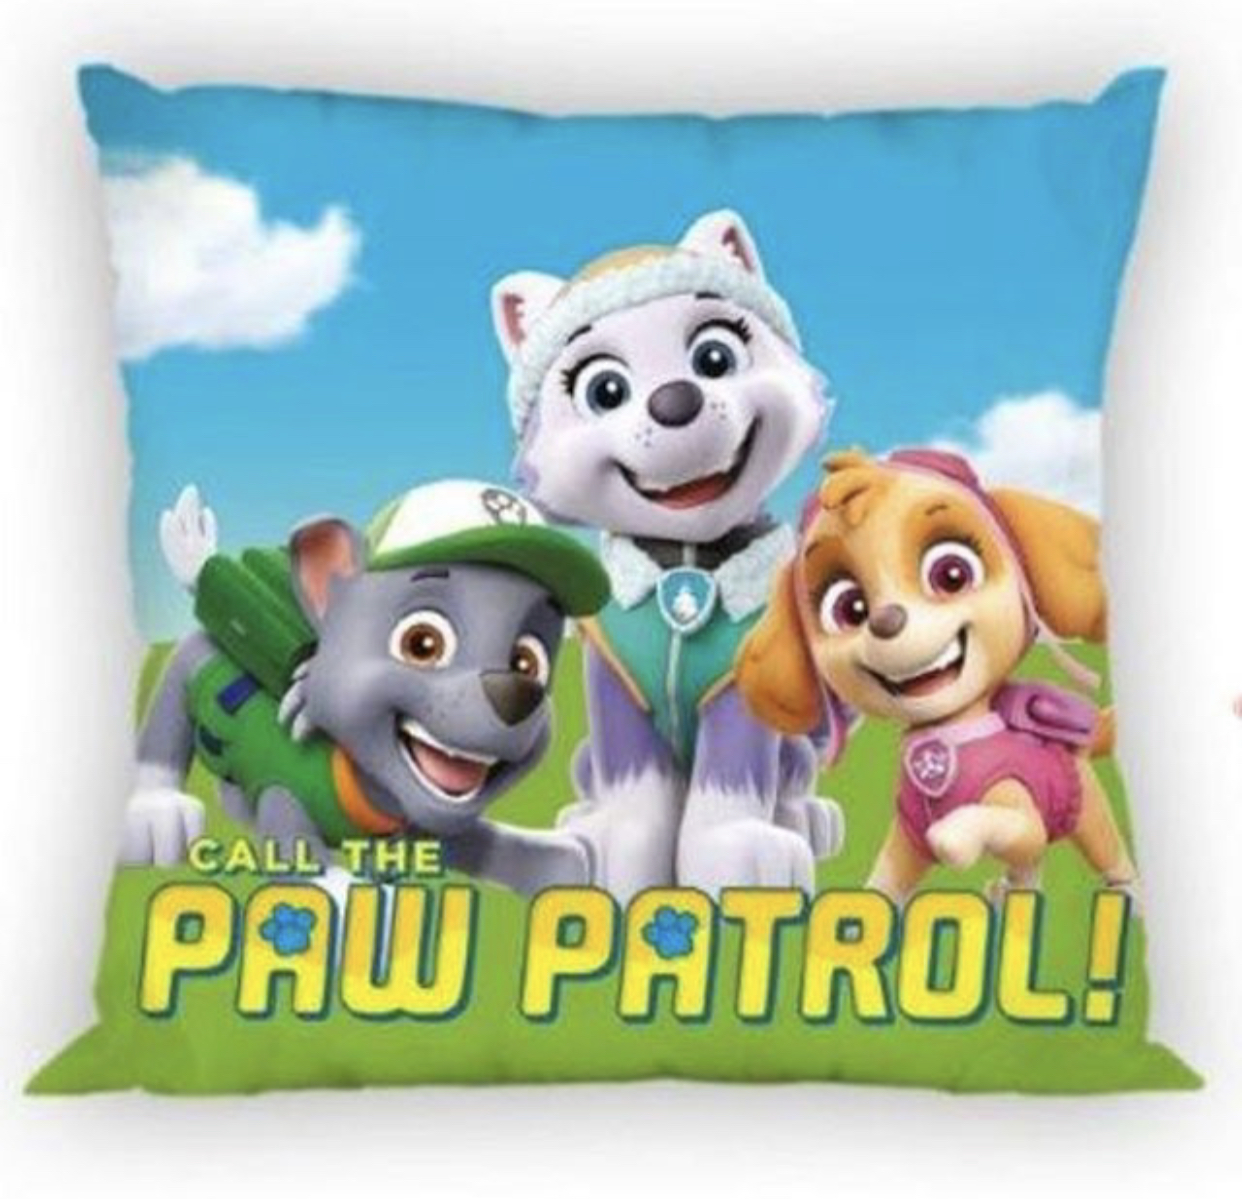 Paw Patrol kuddfodral från Smallstars.se